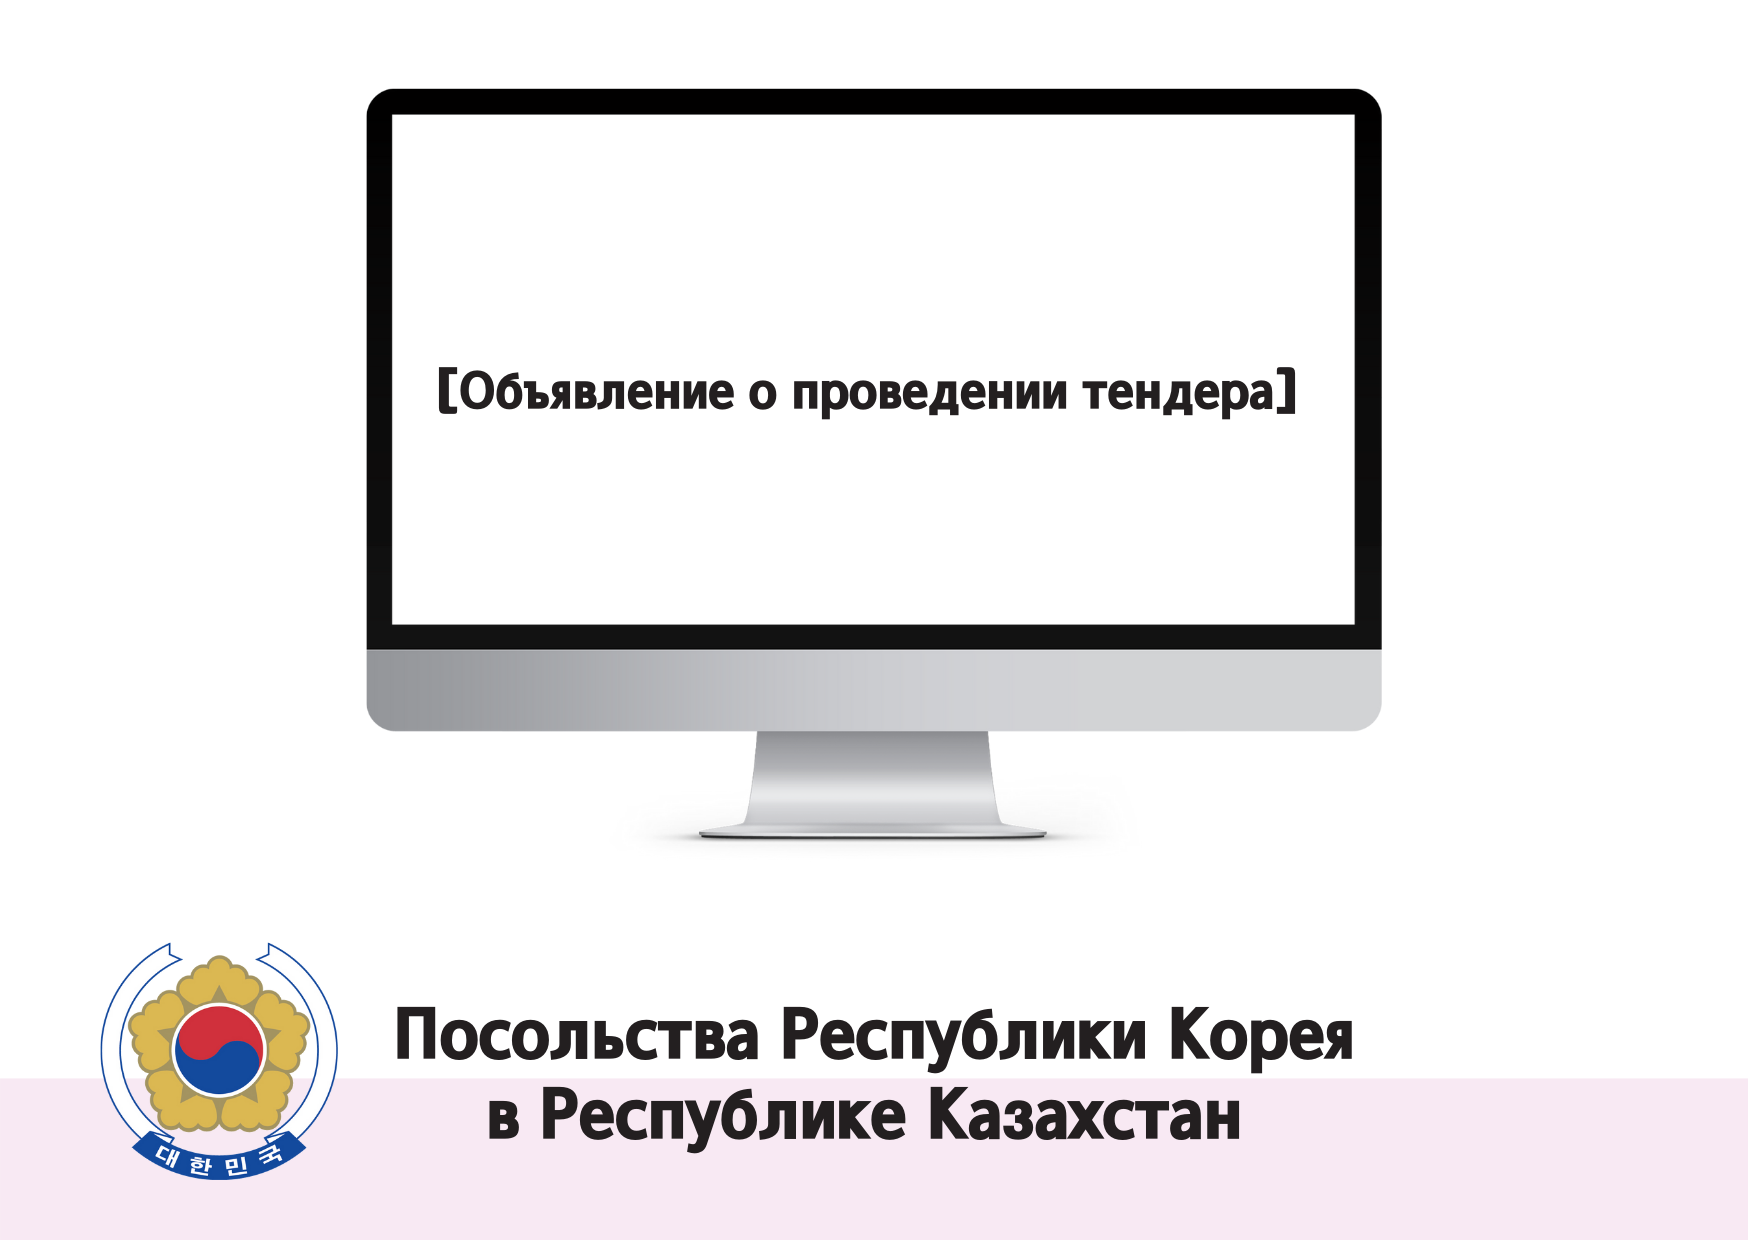 [Объявление о проведении тендера] Тендер на закупку учебных компьютеров для Посольства Республики Корея  в Республике Казахстан